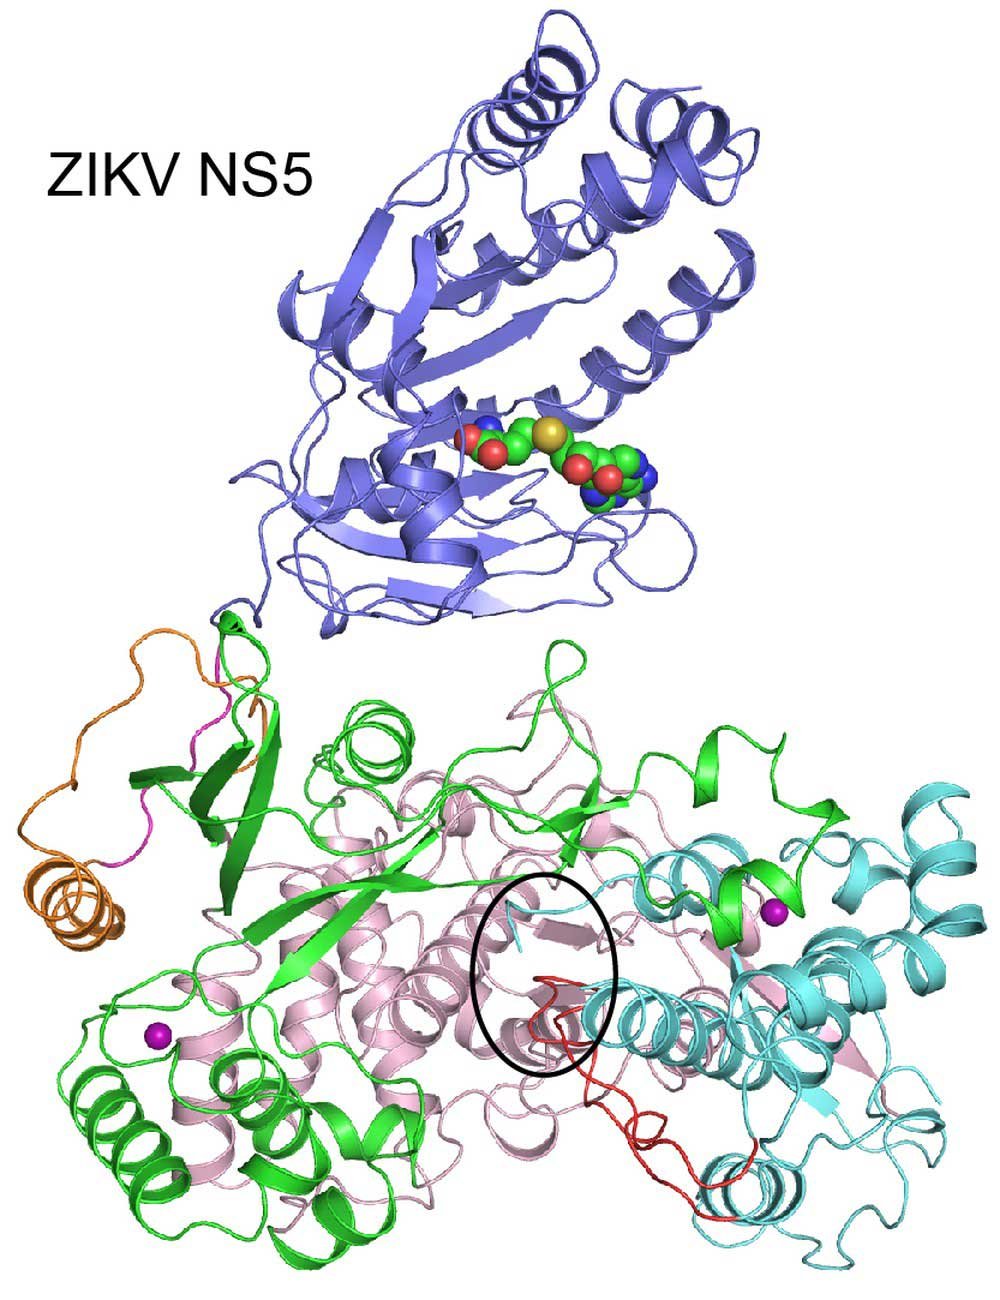 Cientistas desenham estrutura de proteína chave do vírus da zika